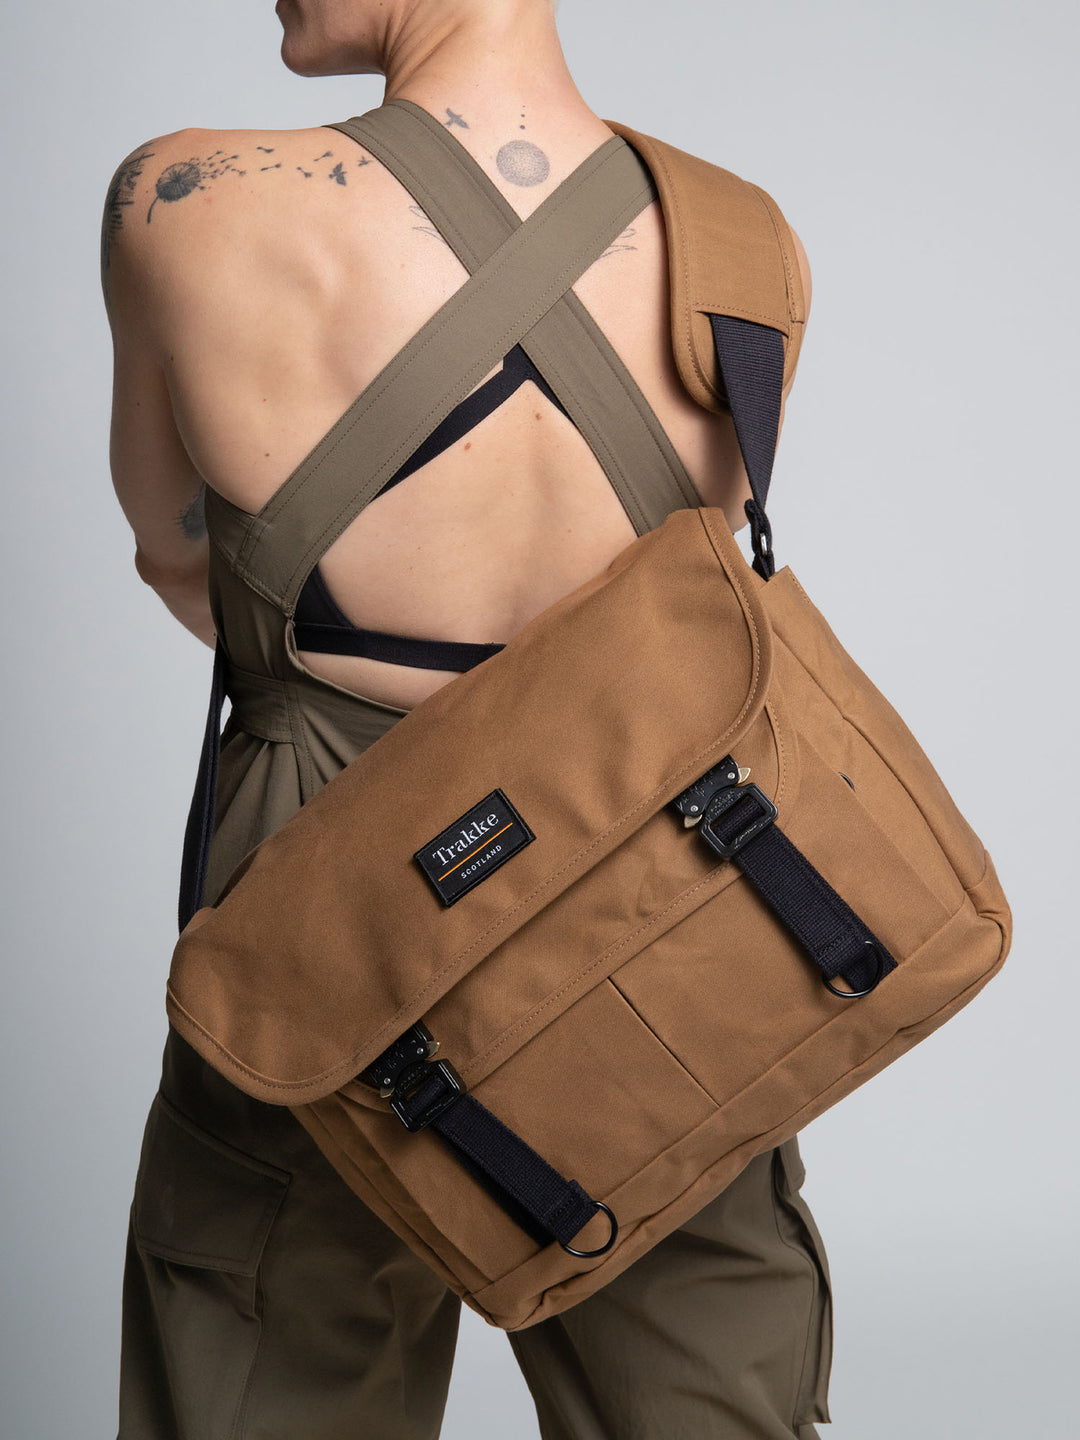 Bairn Mini Messenger – Everyday Carry Messenger Bag - Trakke